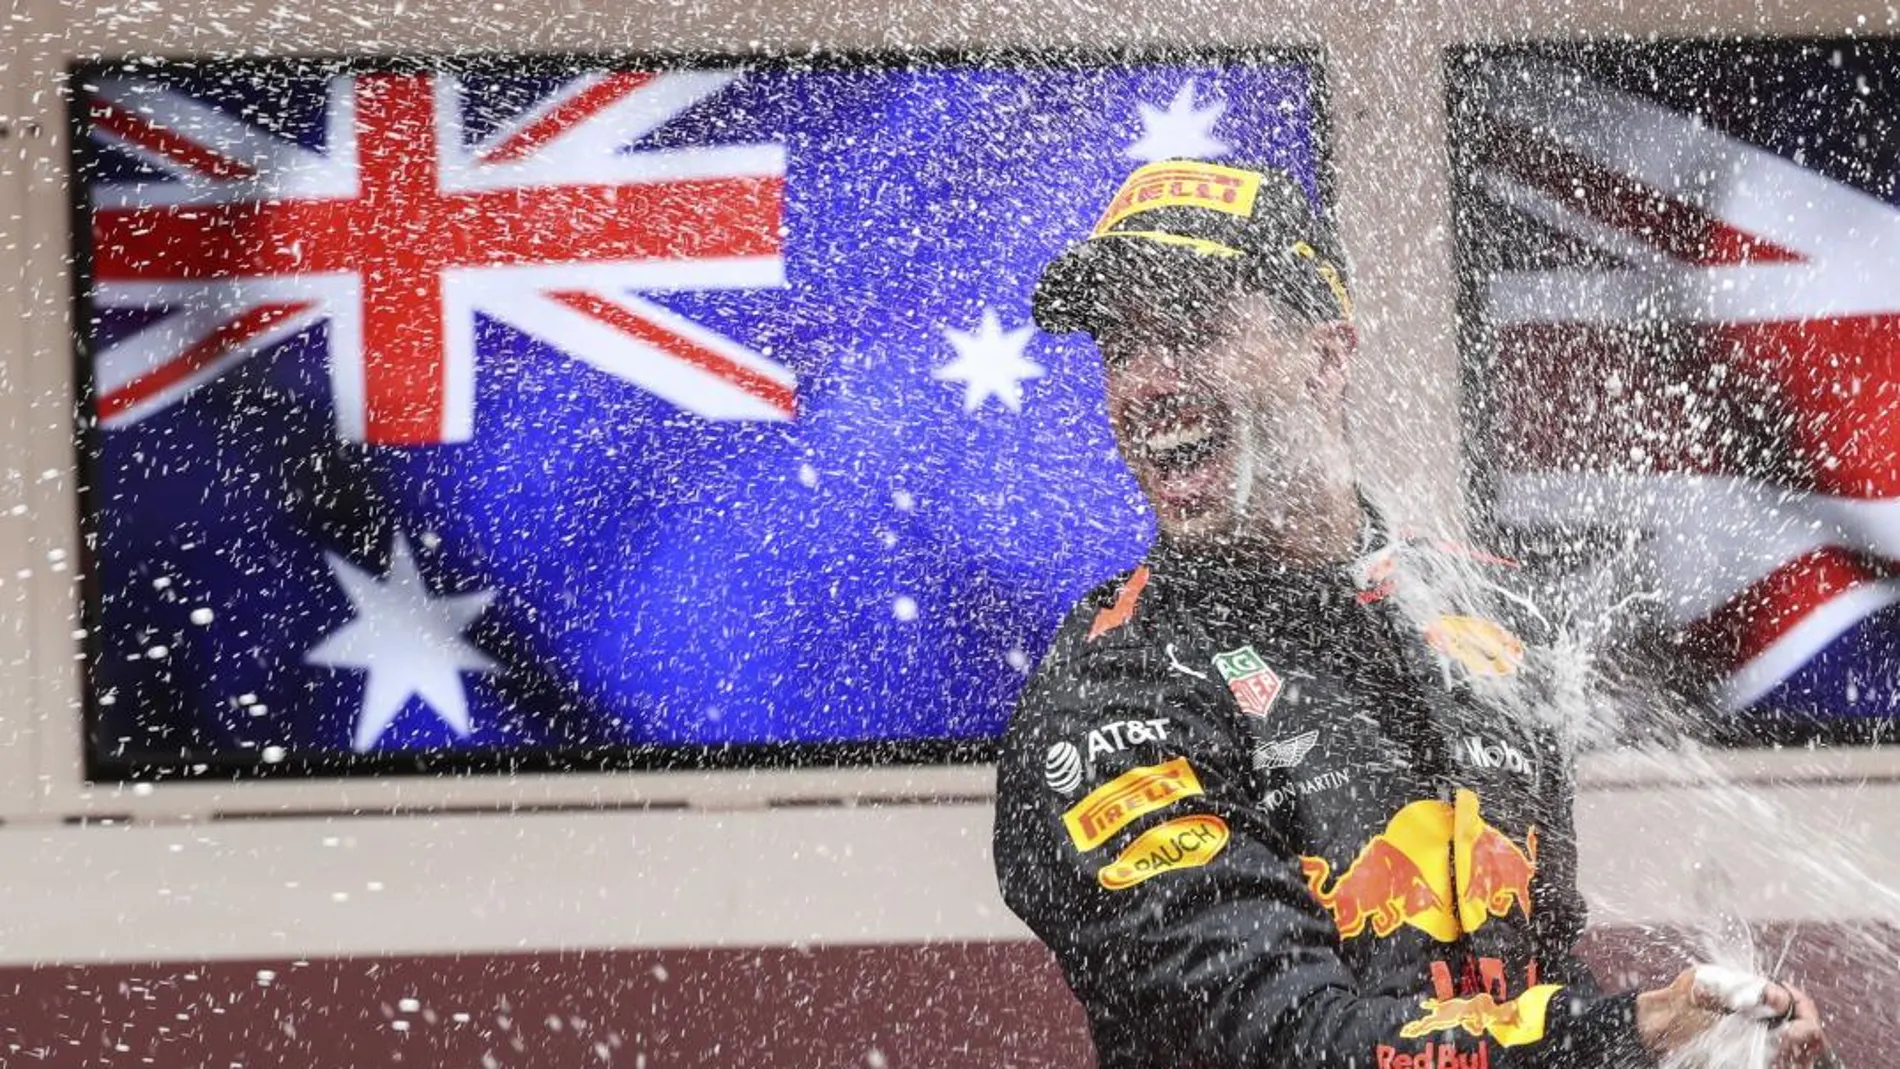 Daniel Ricciardo celebra su triunfo en Mónaco. EFE/EPA/SRDJAN SUKI